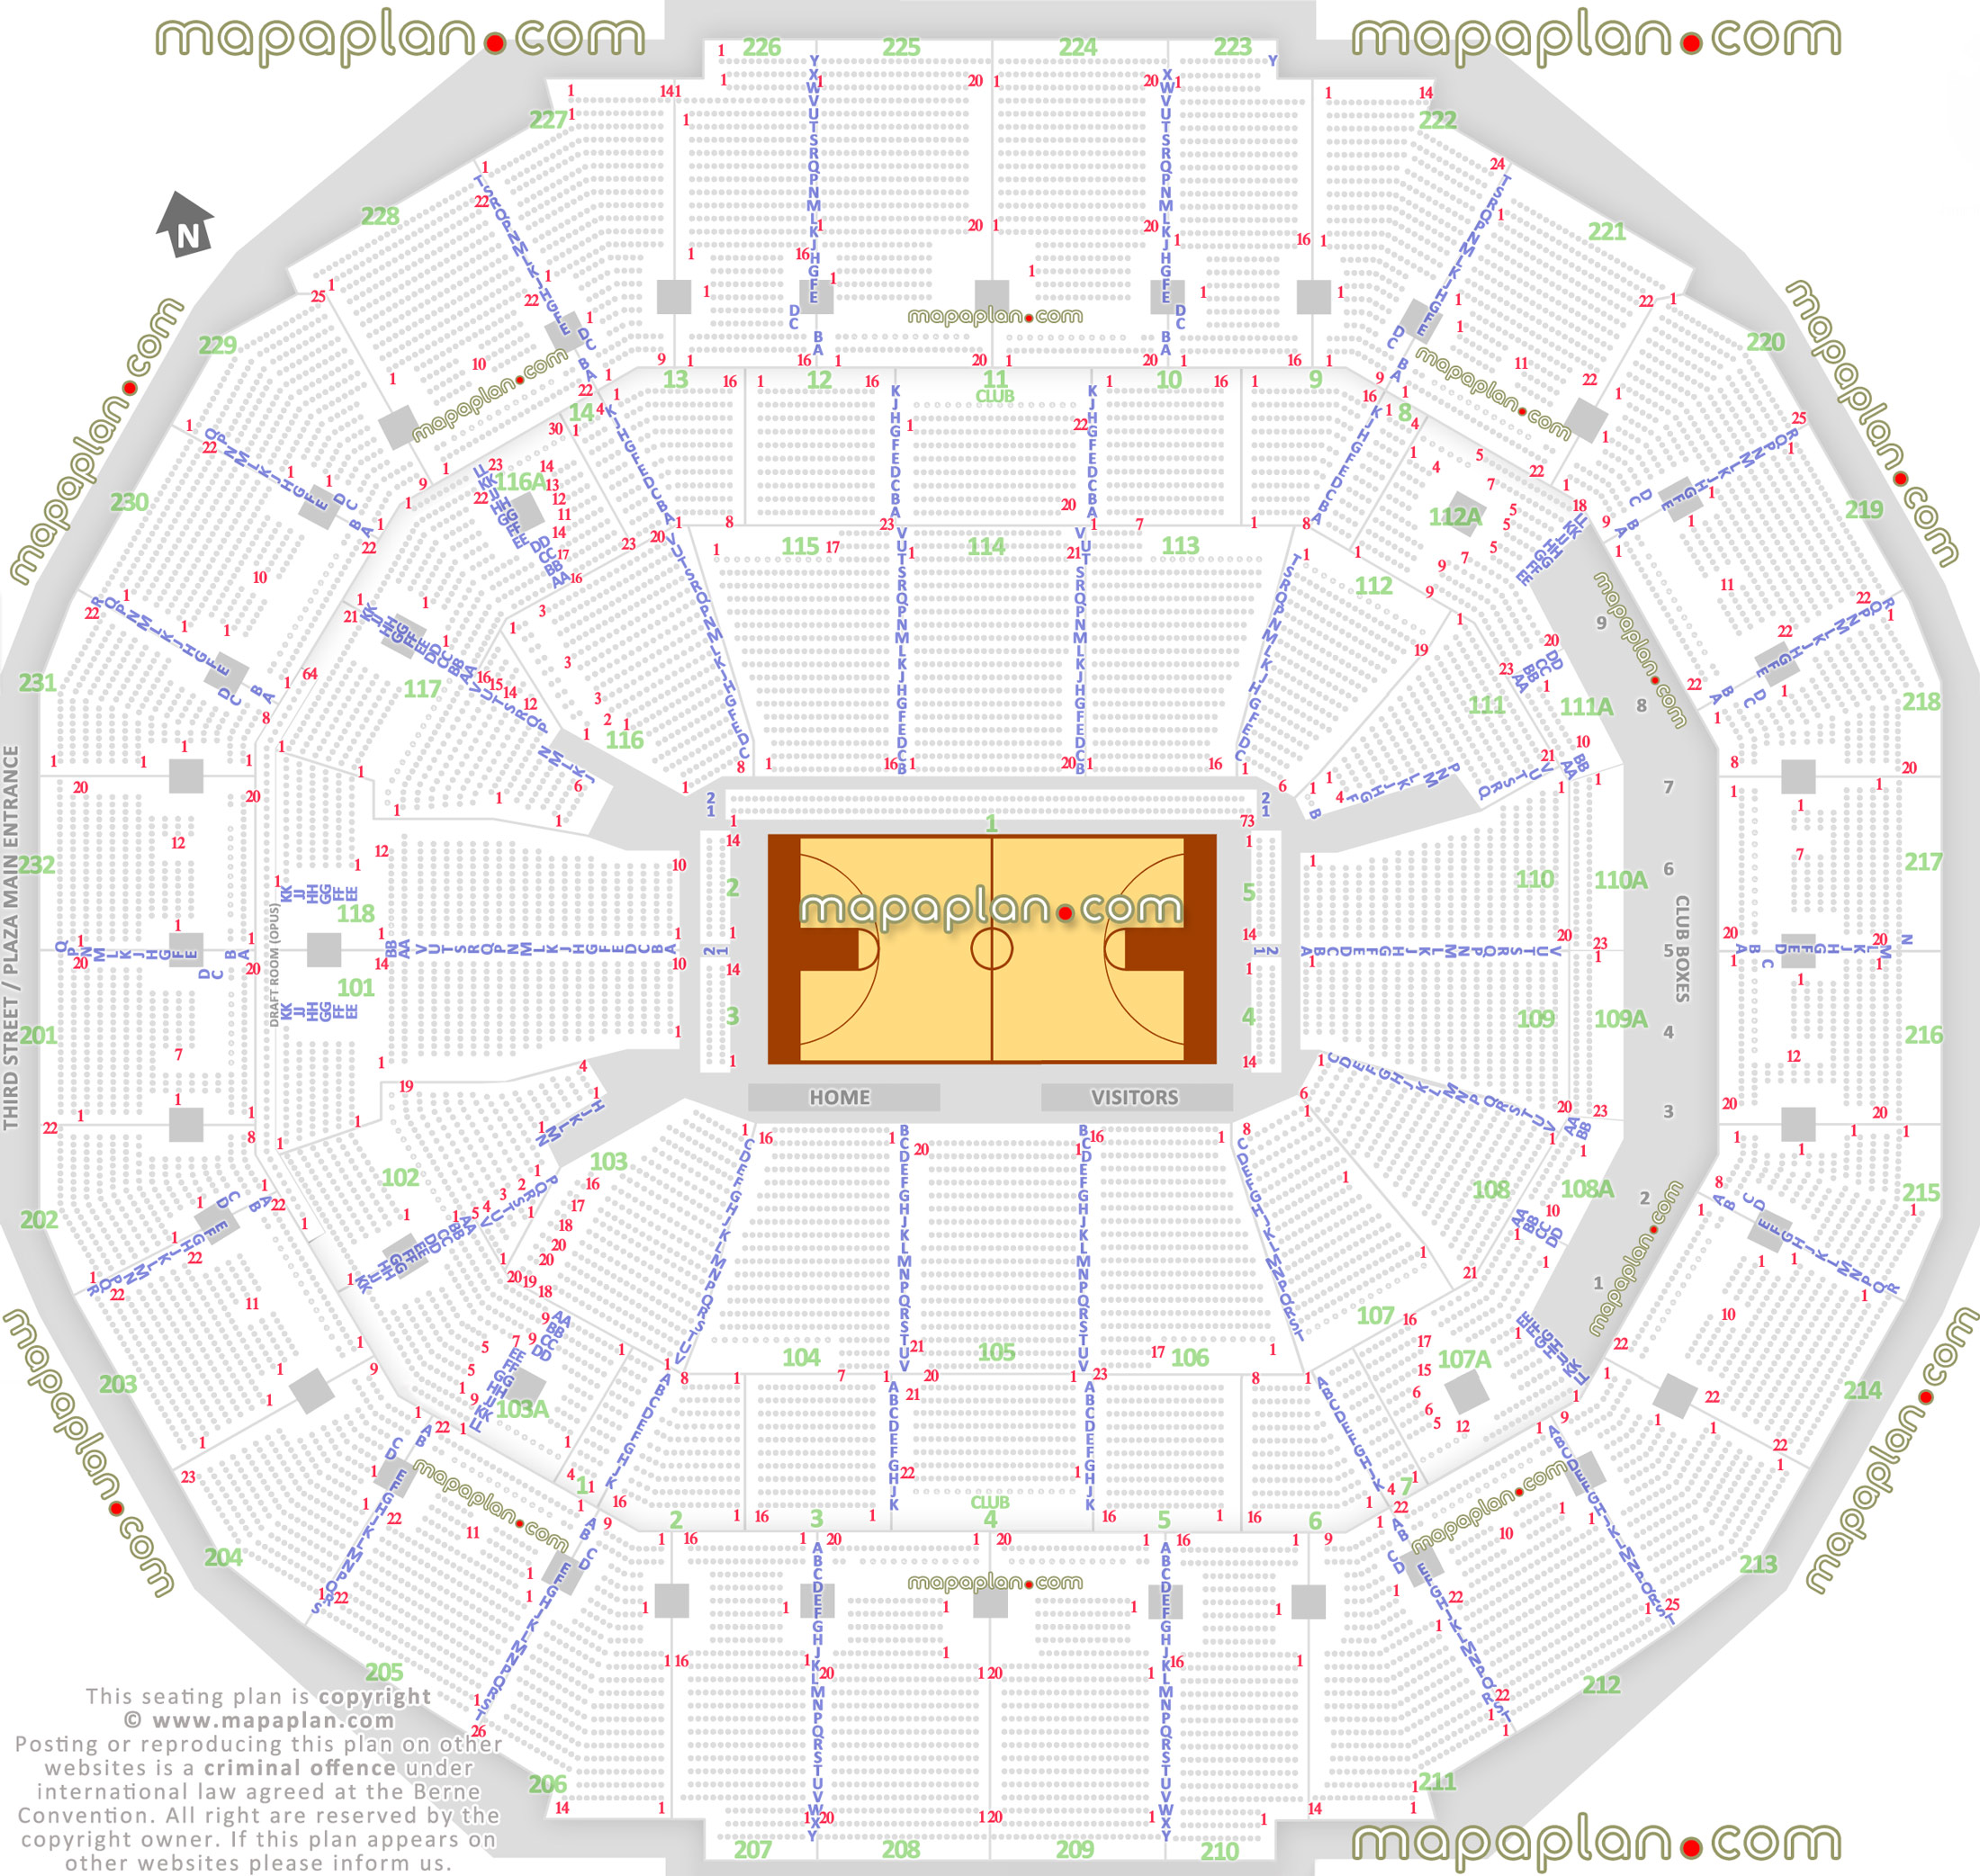 FedExForum Basketball plan for Memphis Grizzlies NBA & Tigers NCAA